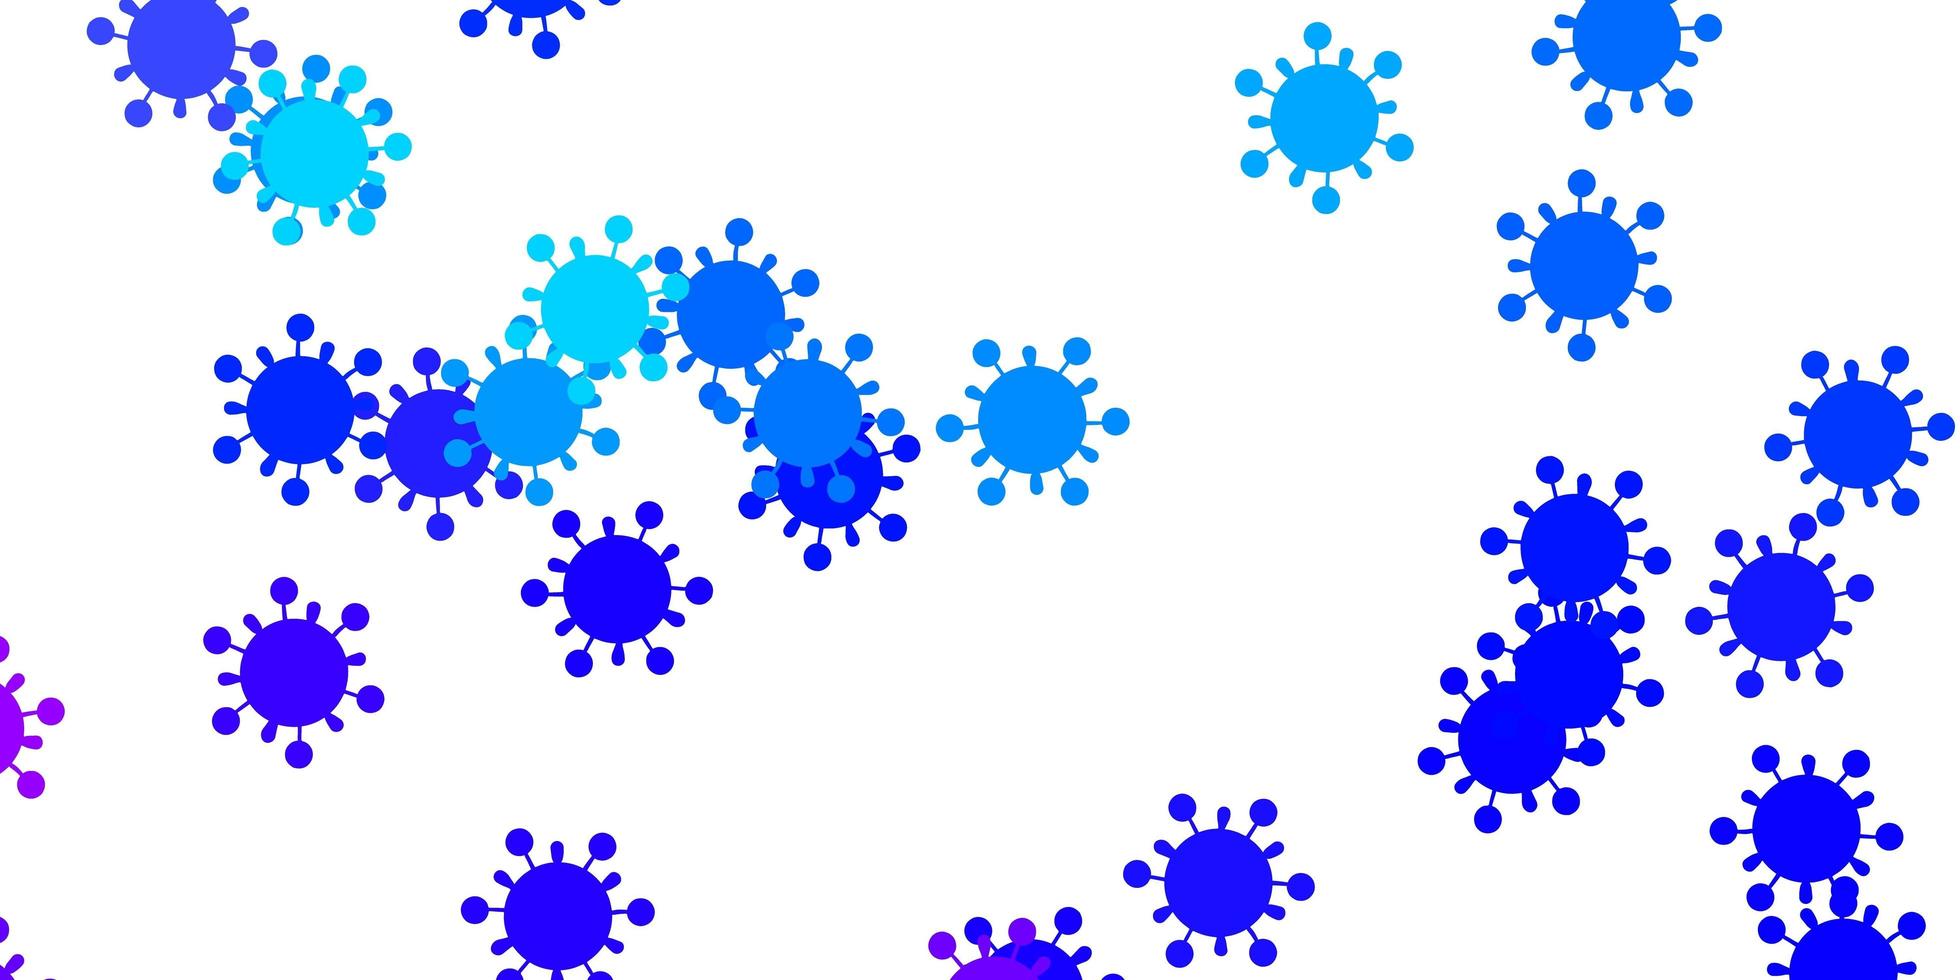 ljusrosa, blå vektor bakgrund med virussymboler.